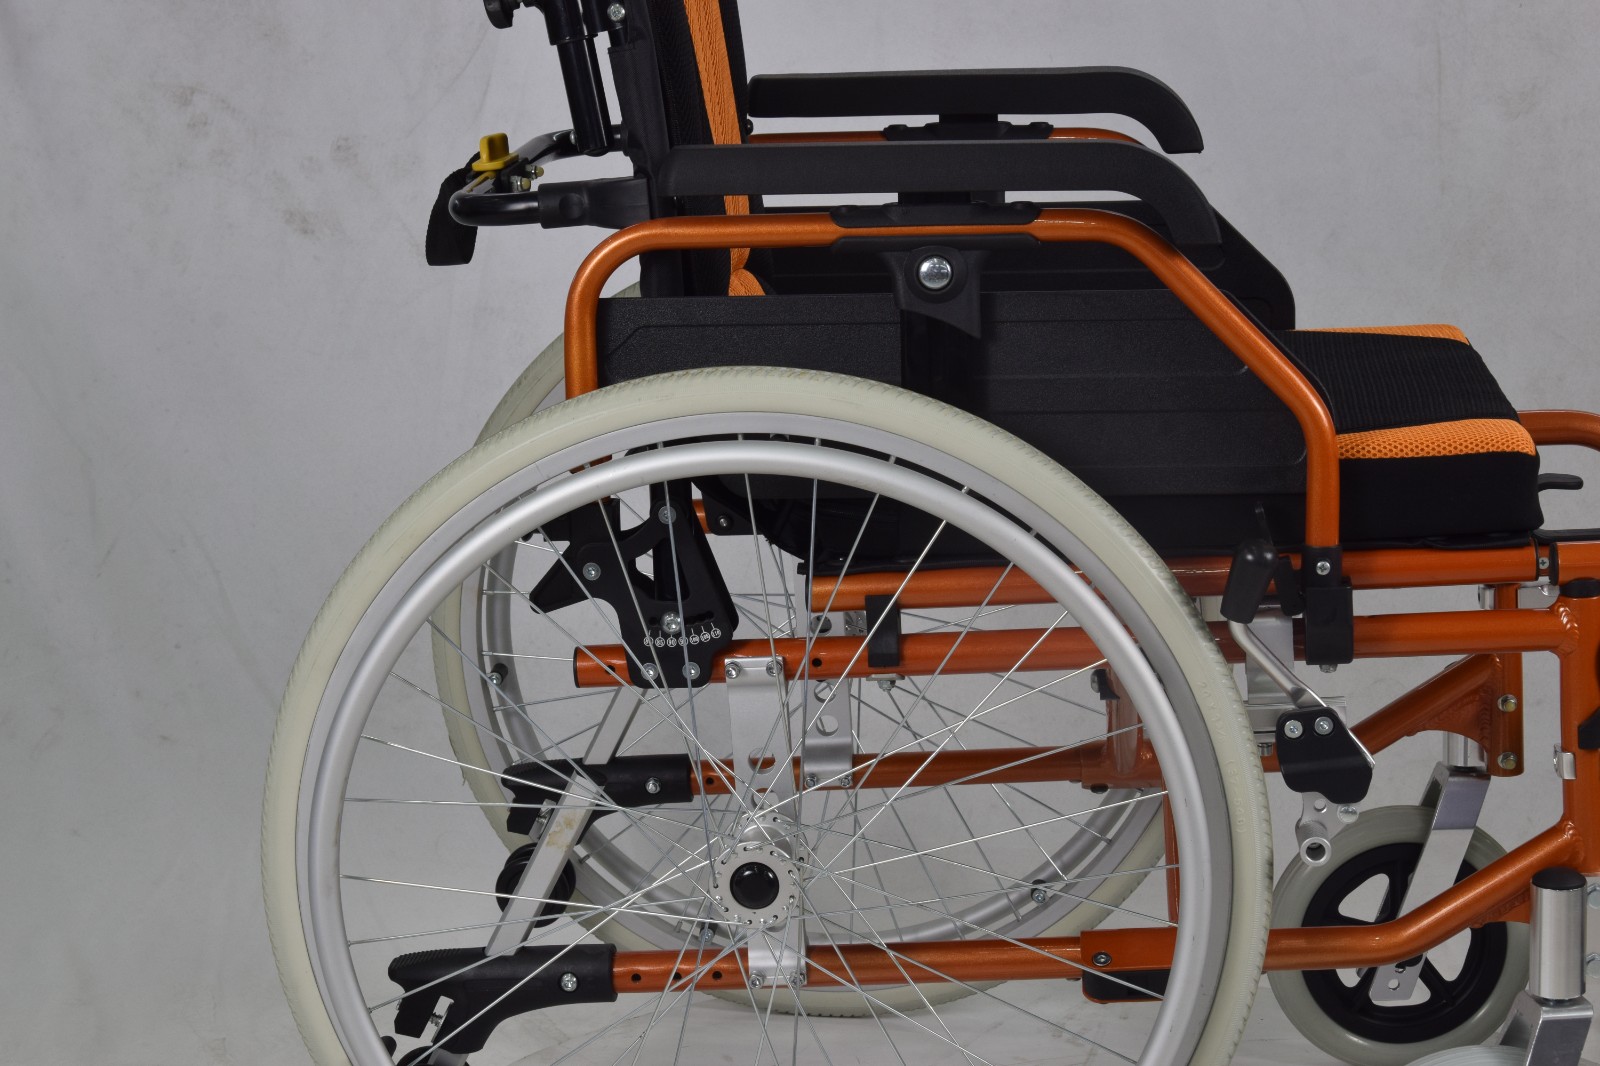 lightweight aluminum wheelchair